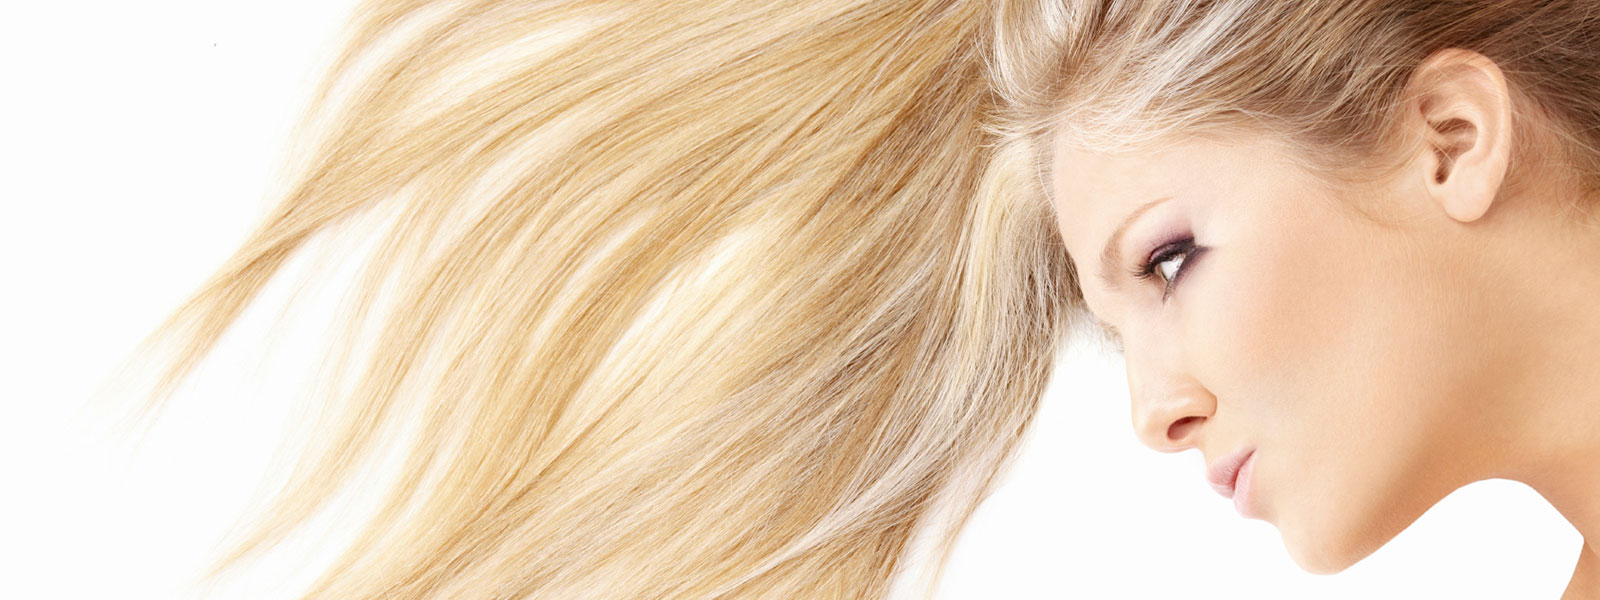 10 dicas para manter os cabelos lindos e saudáveis